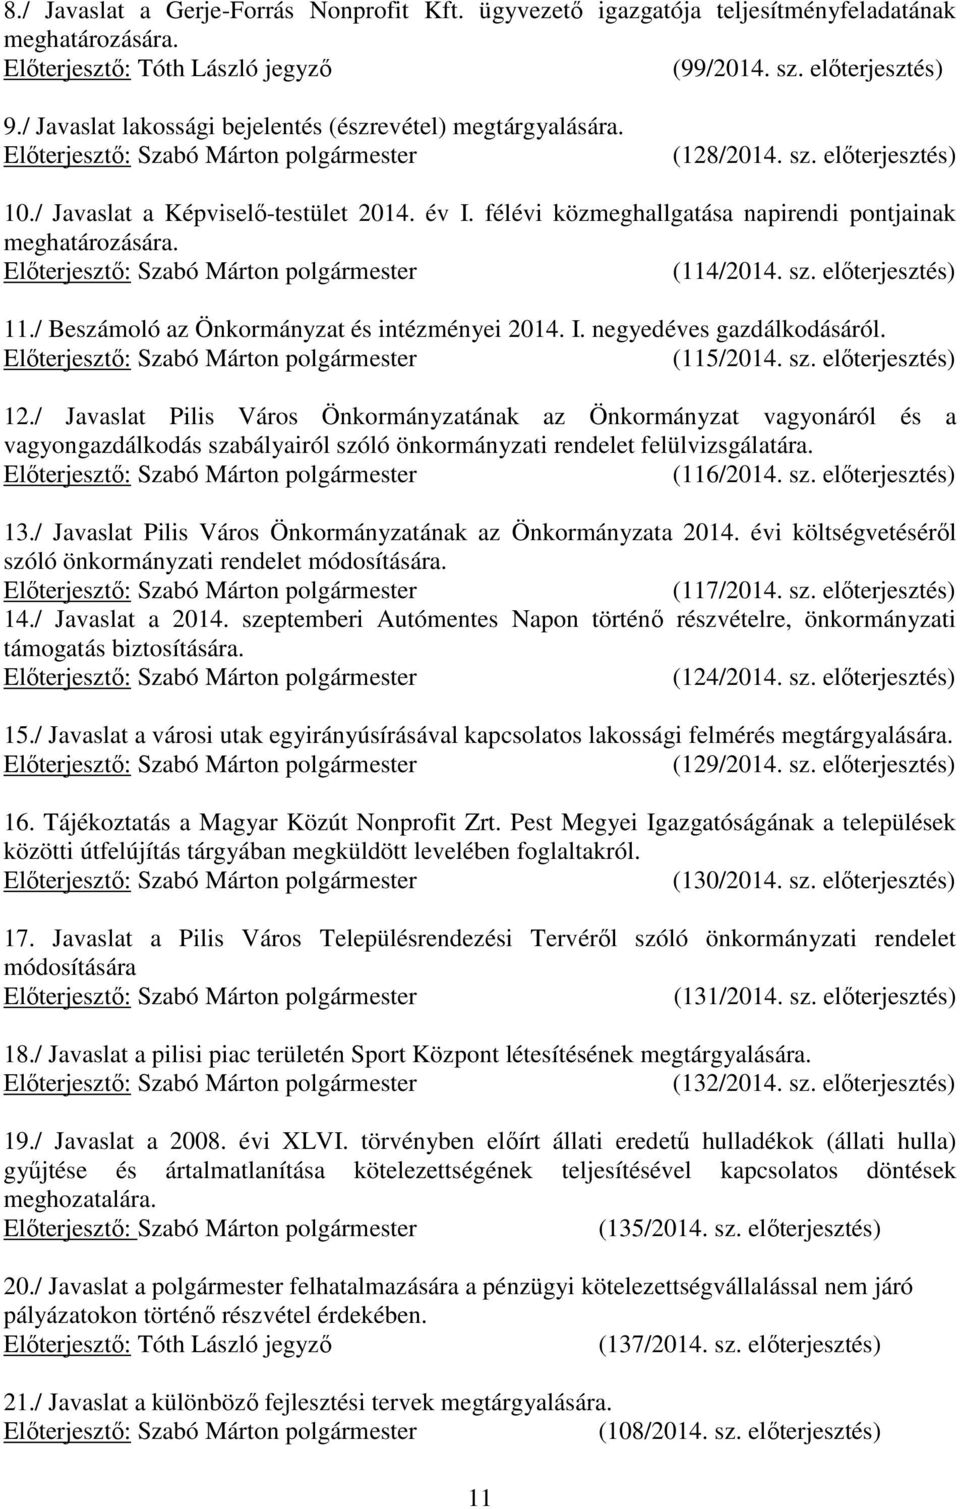 (114/2014. sz. elıterjesztés) 11./ Beszámoló az Önkormányzat és intézményei 2014. I. negyedéves gazdálkodásáról. (115/2014. sz. elıterjesztés) 12.